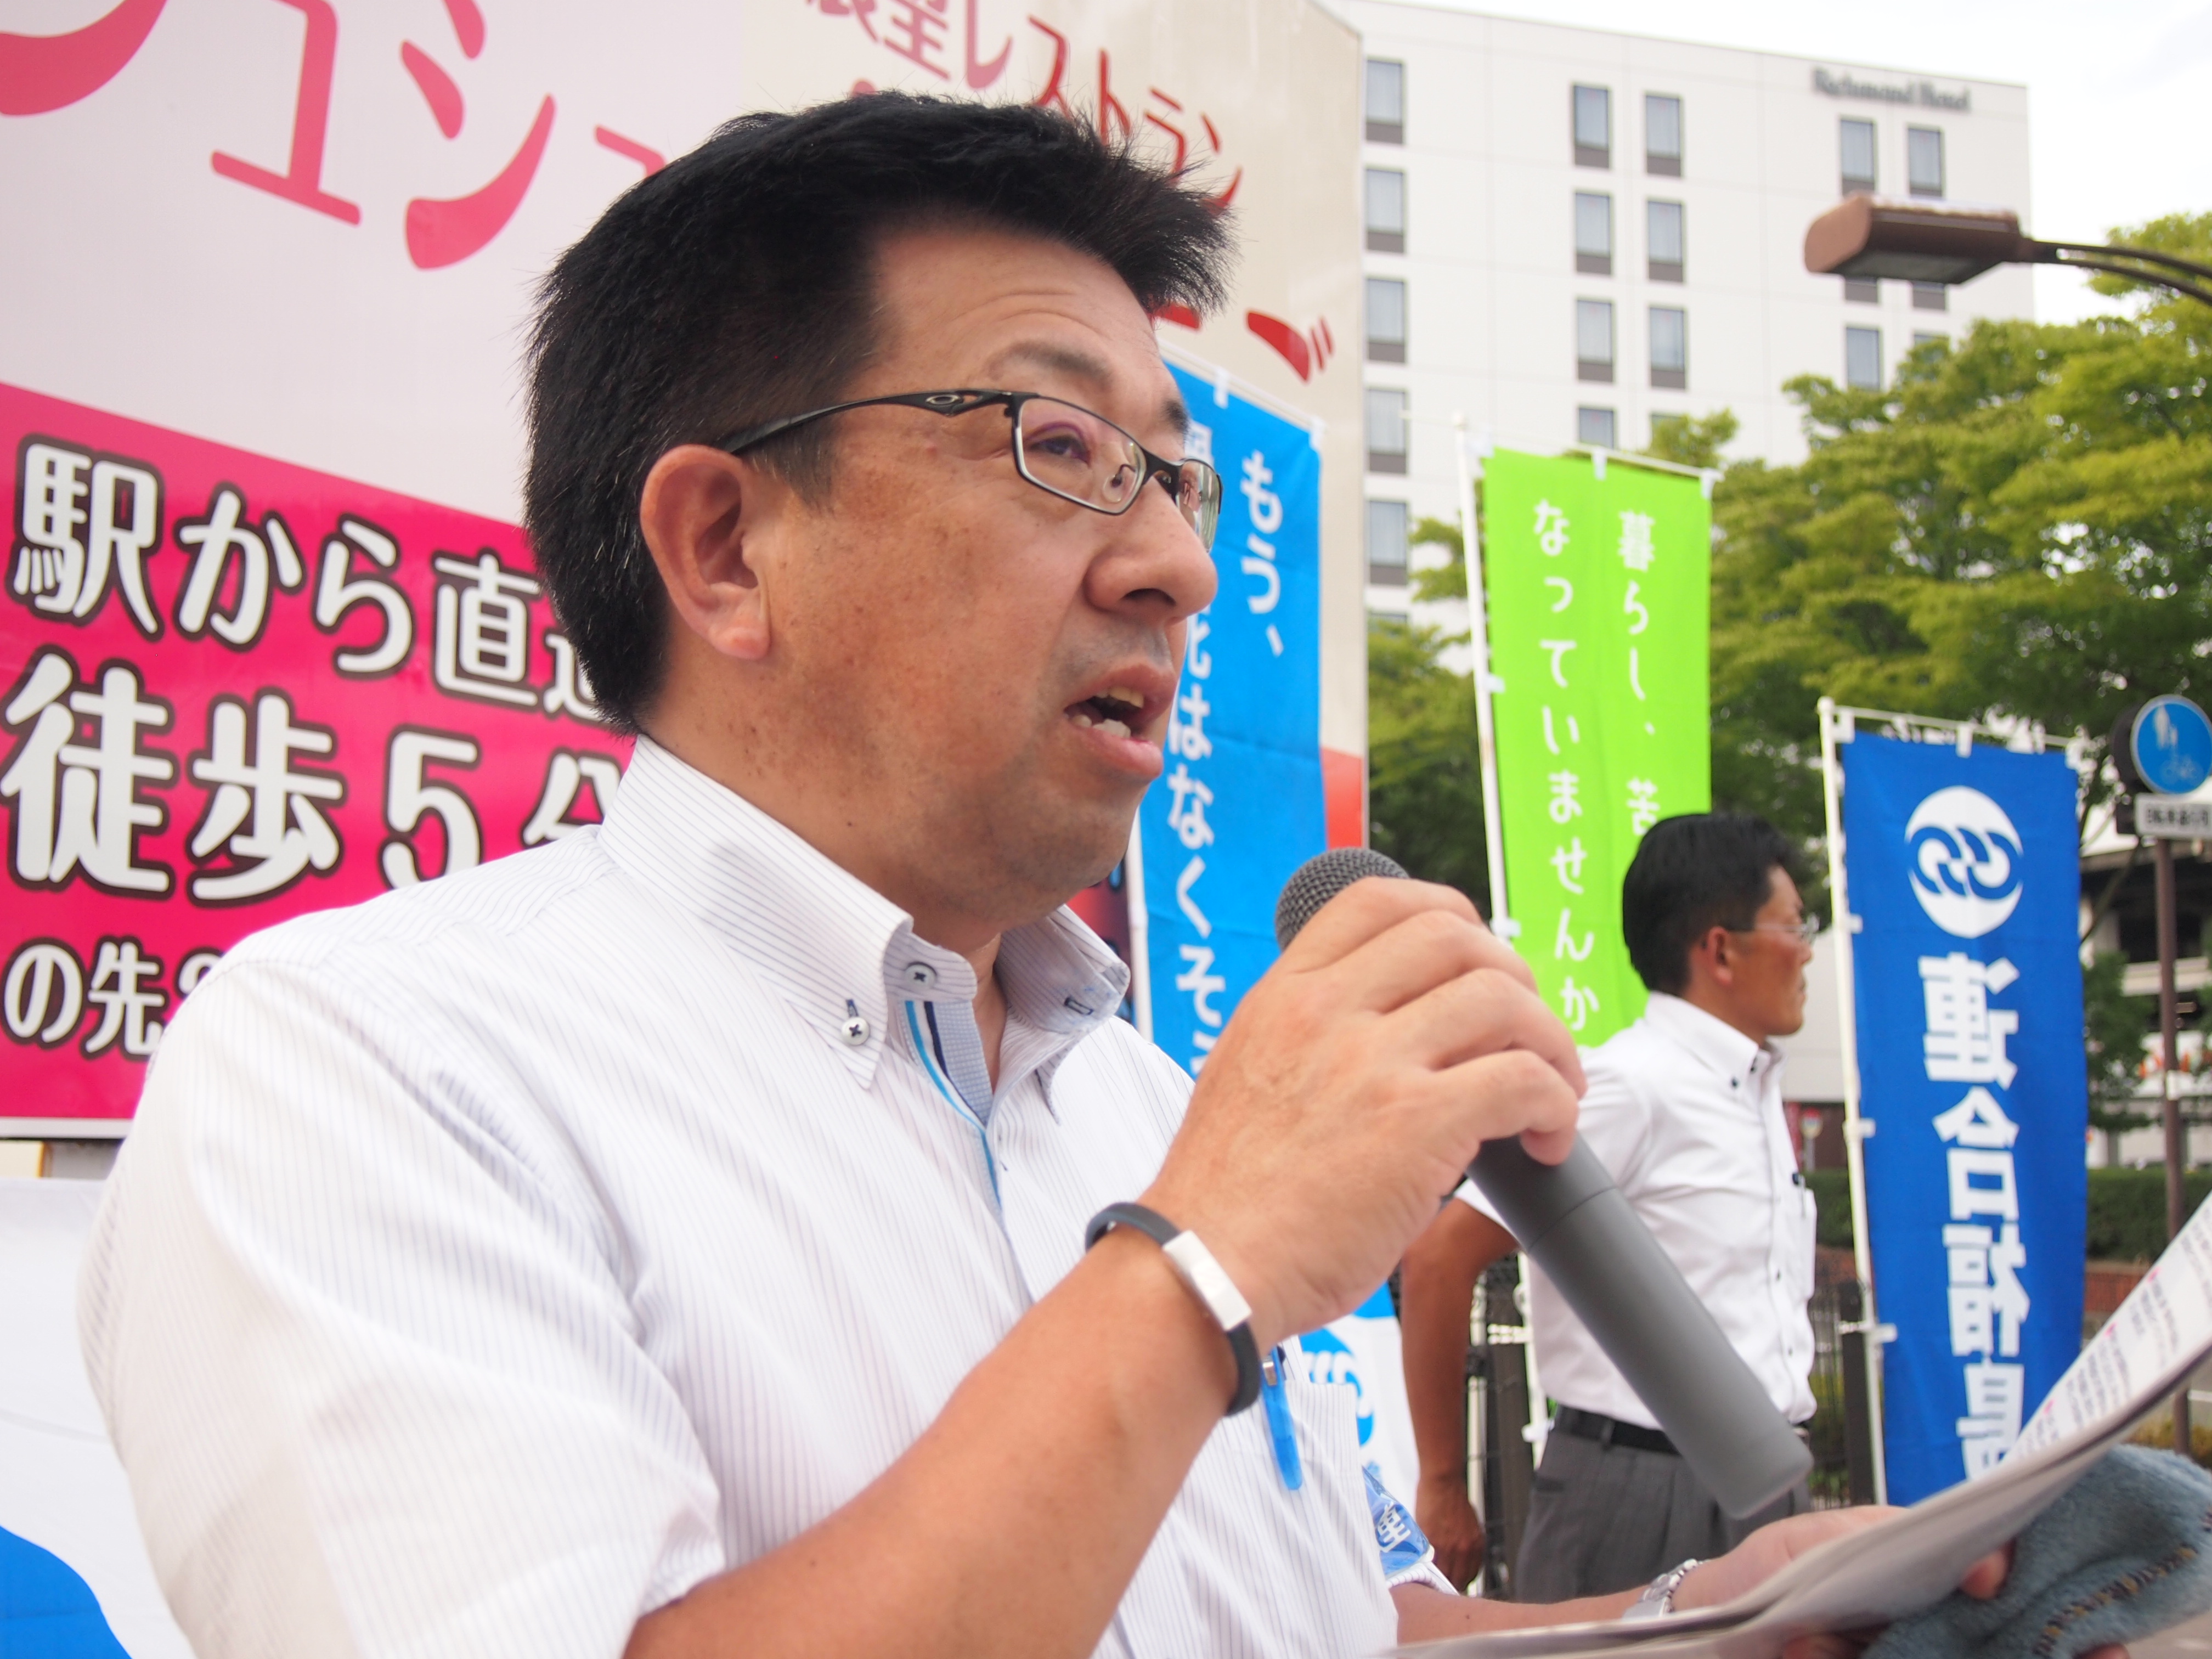 応援団の取り組み「働き方改革関連の課題」を訴える 鈴木克明 連合福島副会長